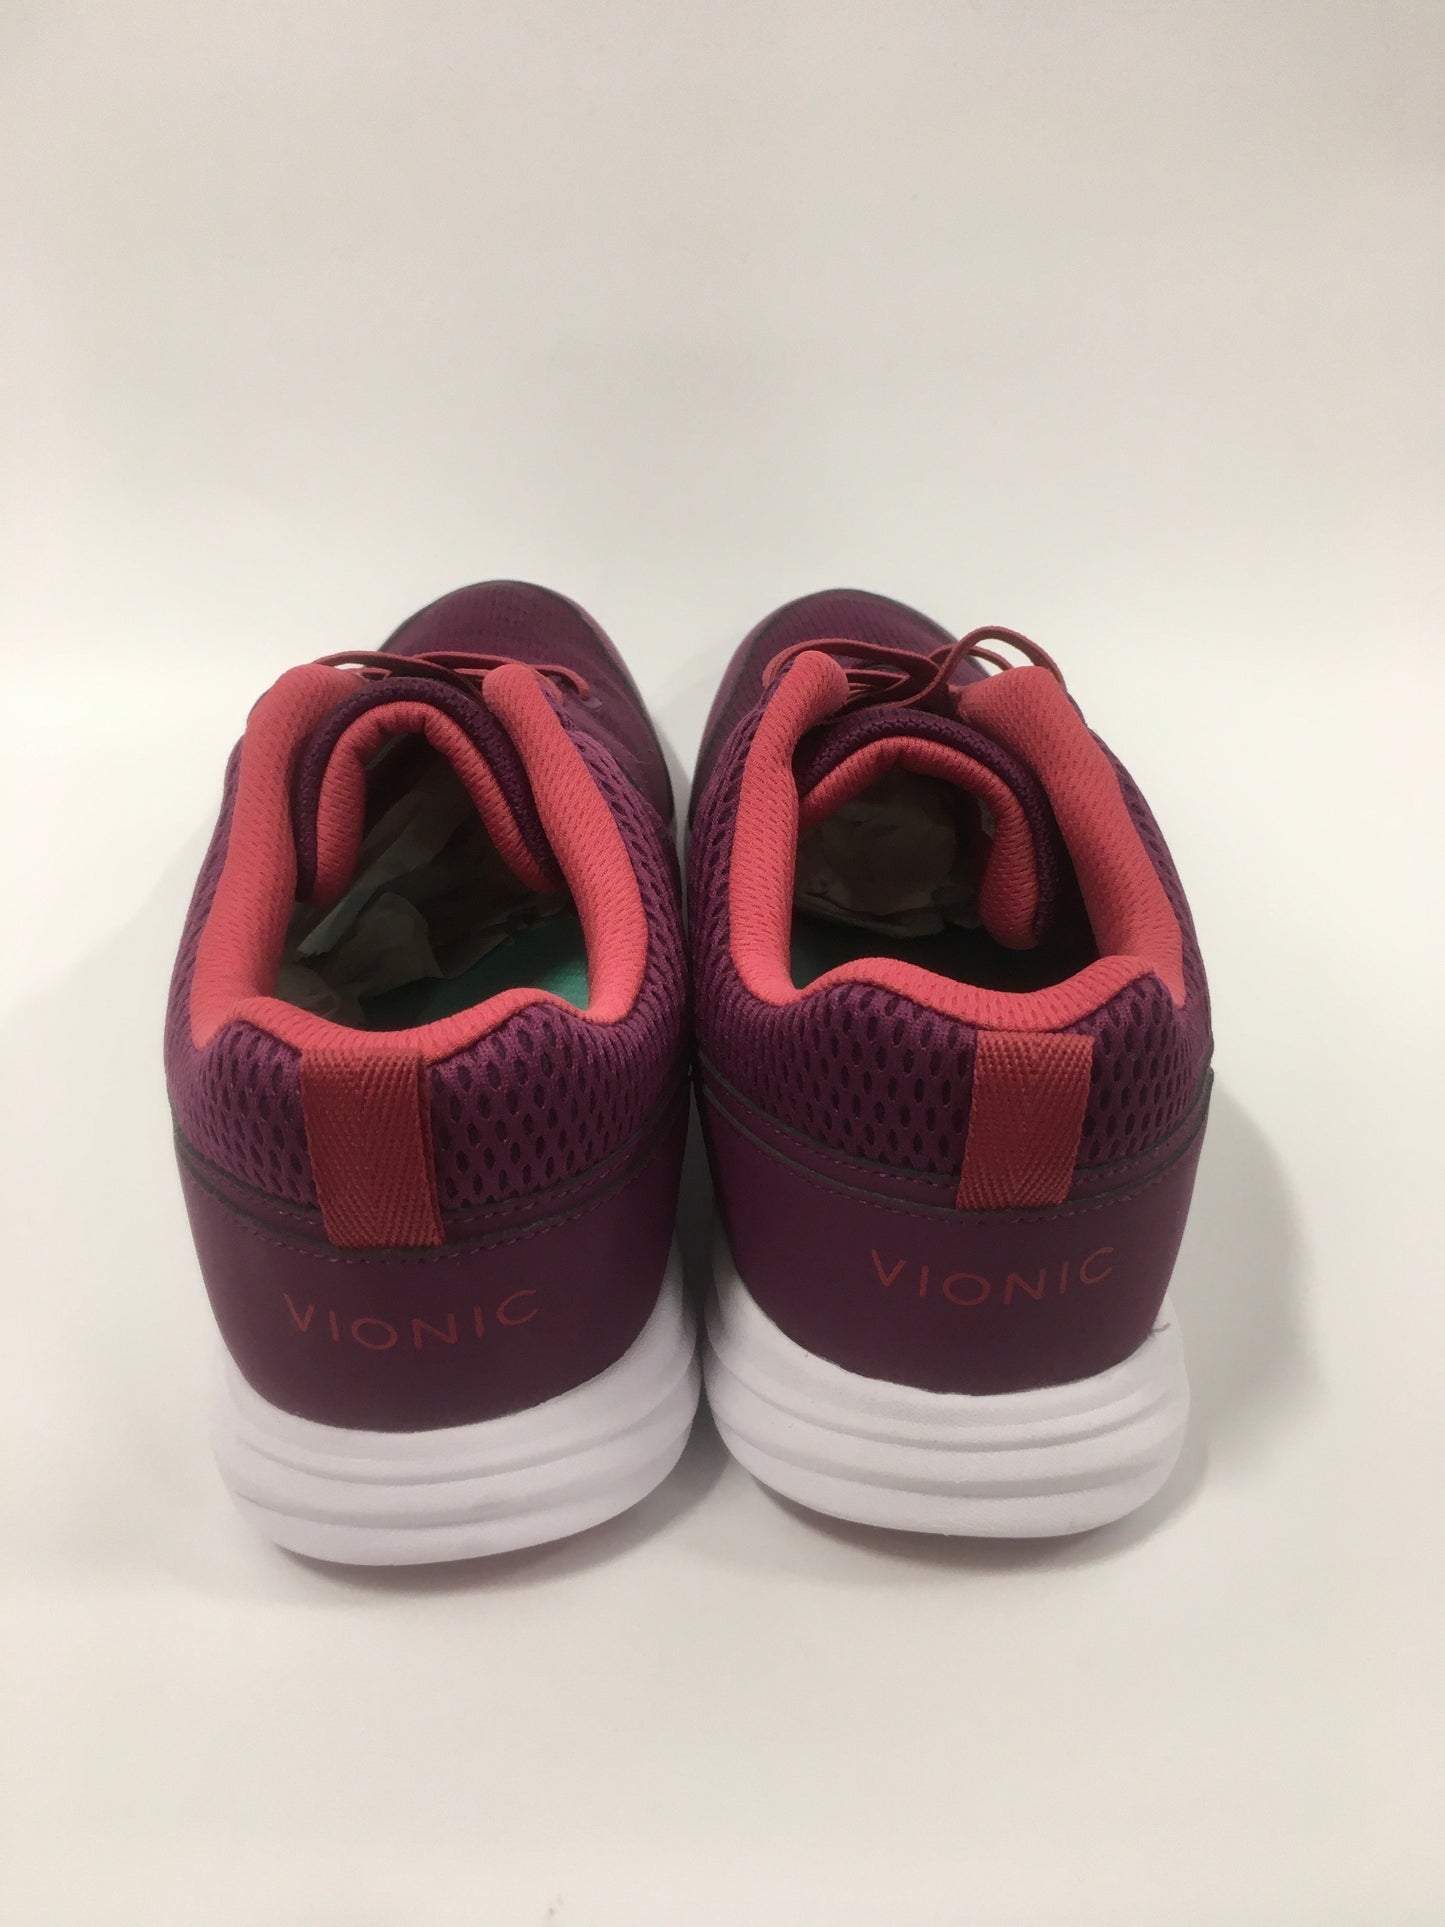 Purple Shoes Athletic Vionic, Size 10